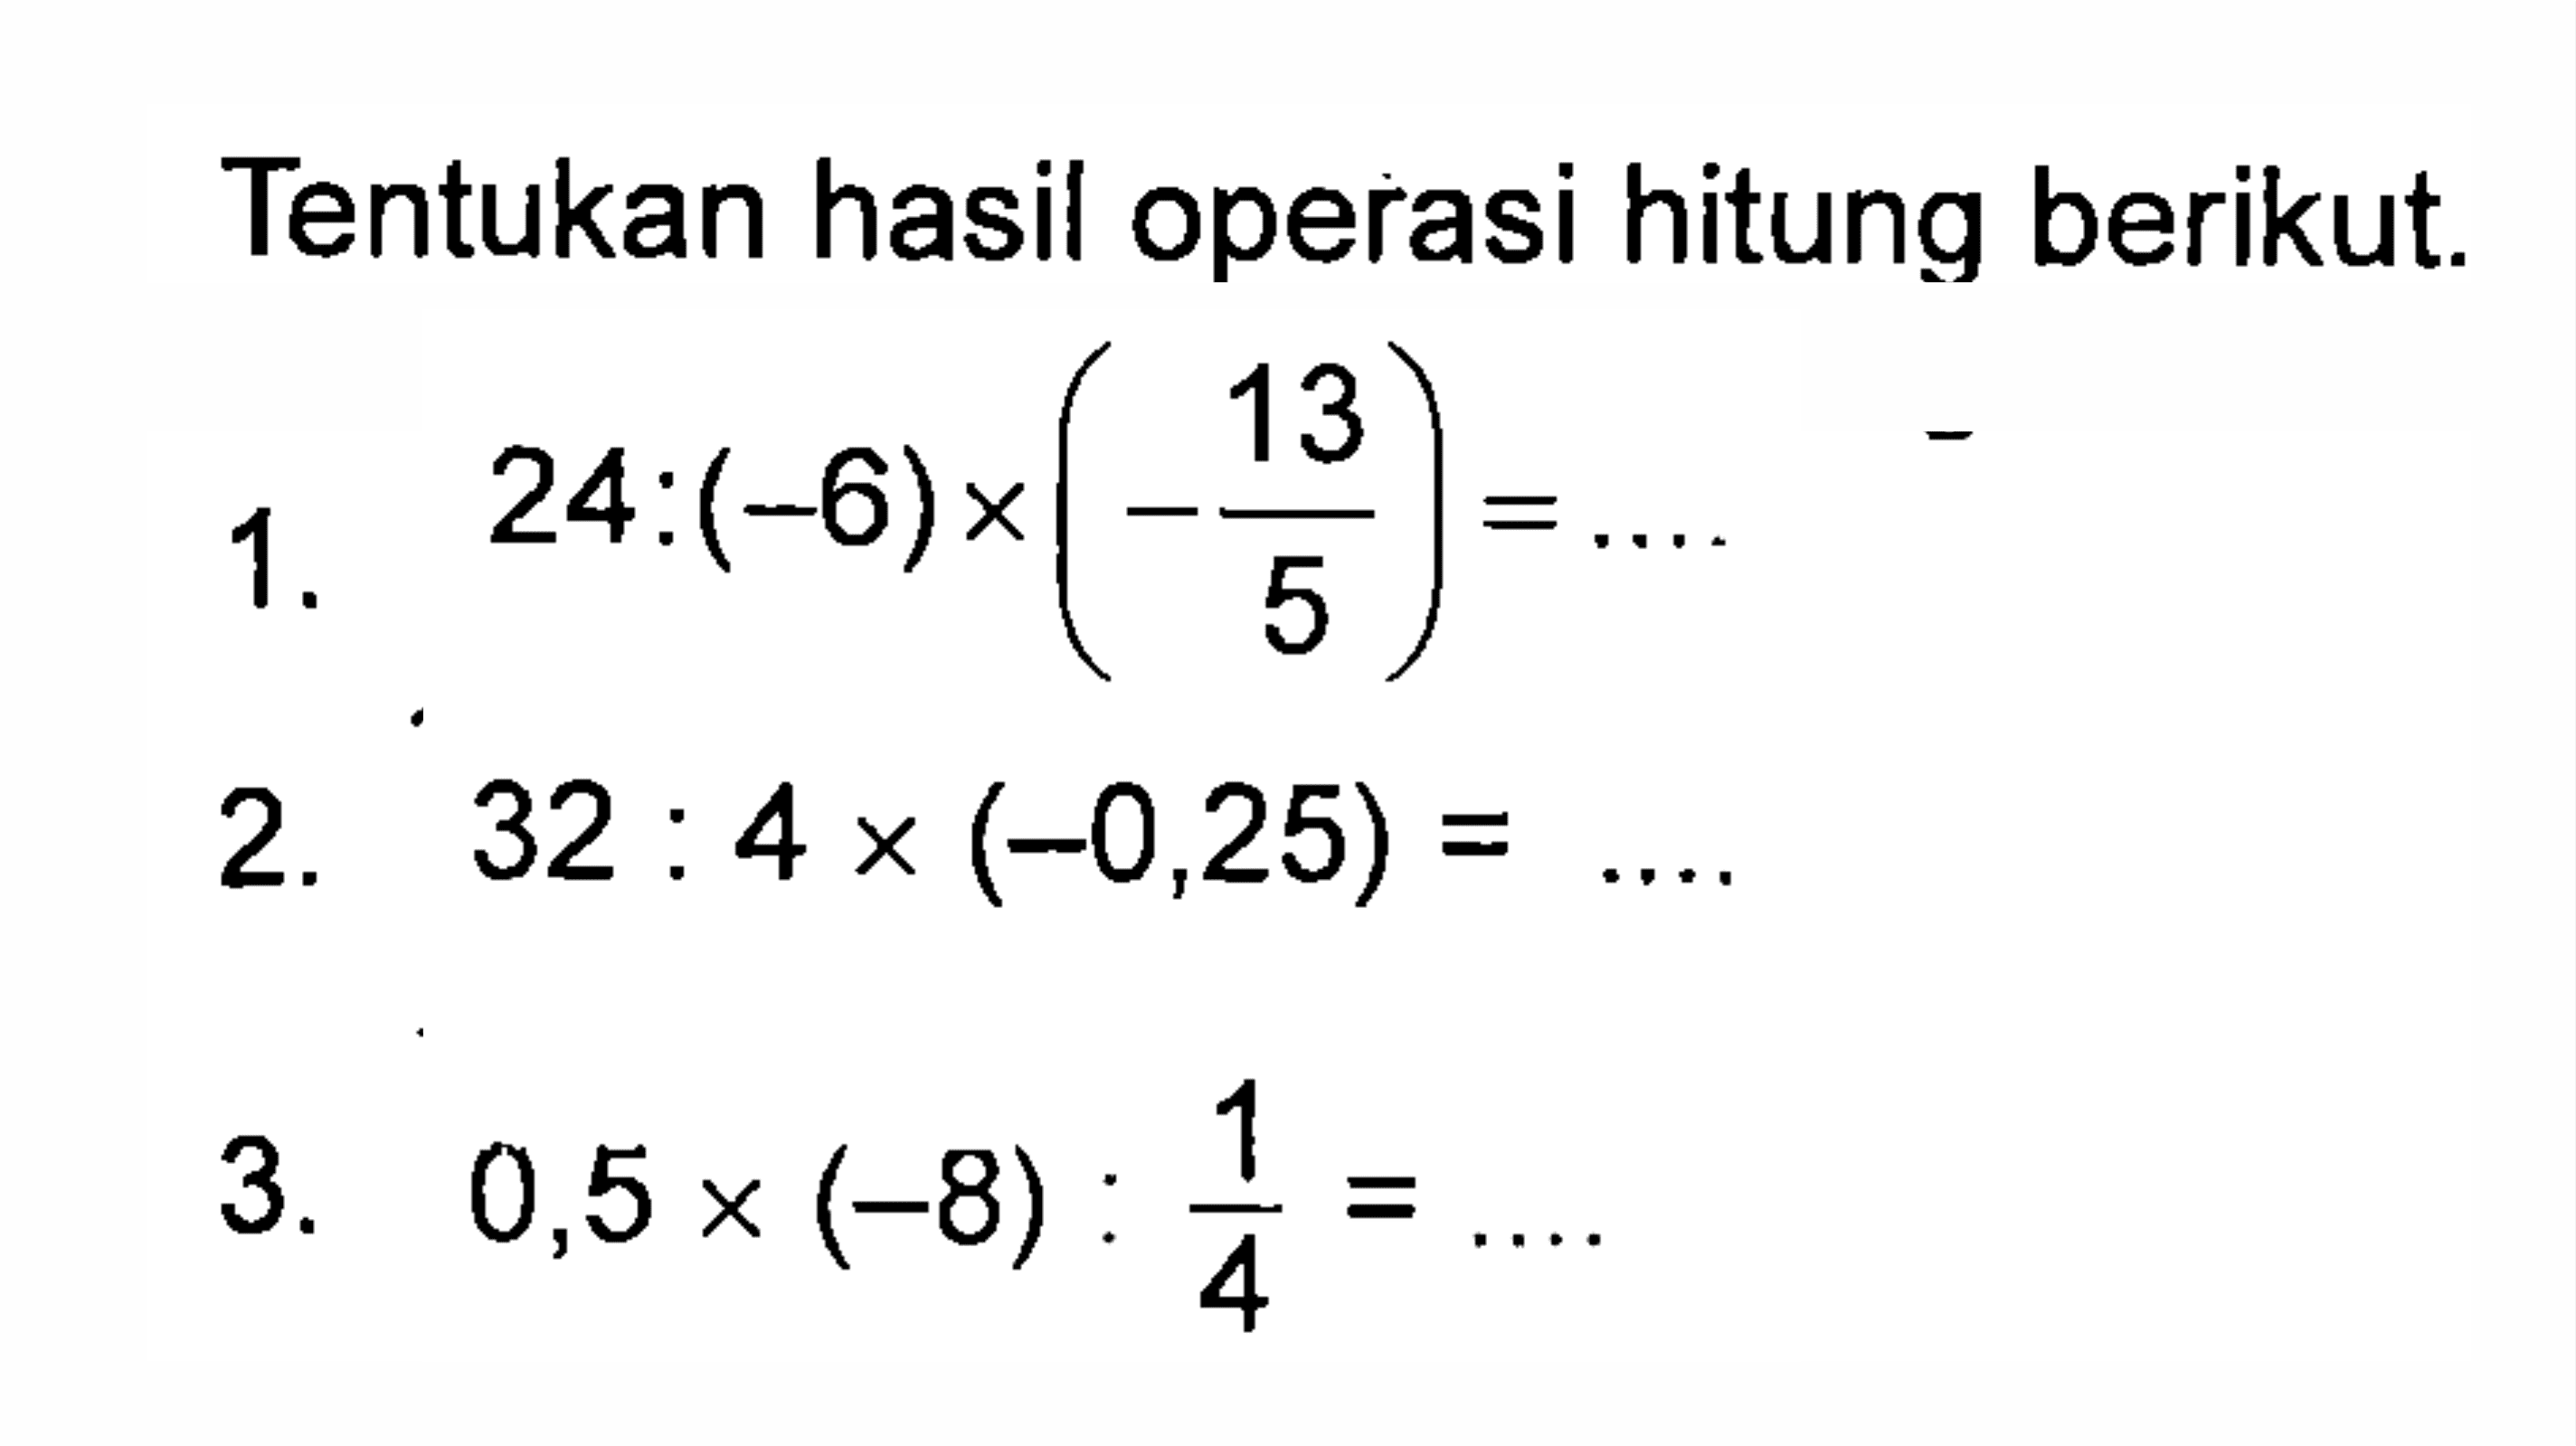 Tentukan hasil operasi hitung berikut. 1. 24 : (-6) x (-13/5) = .... 2. 32 : 4 x (-0,25) = .... 3. 0,5 x (-8) : 1/4 = ....